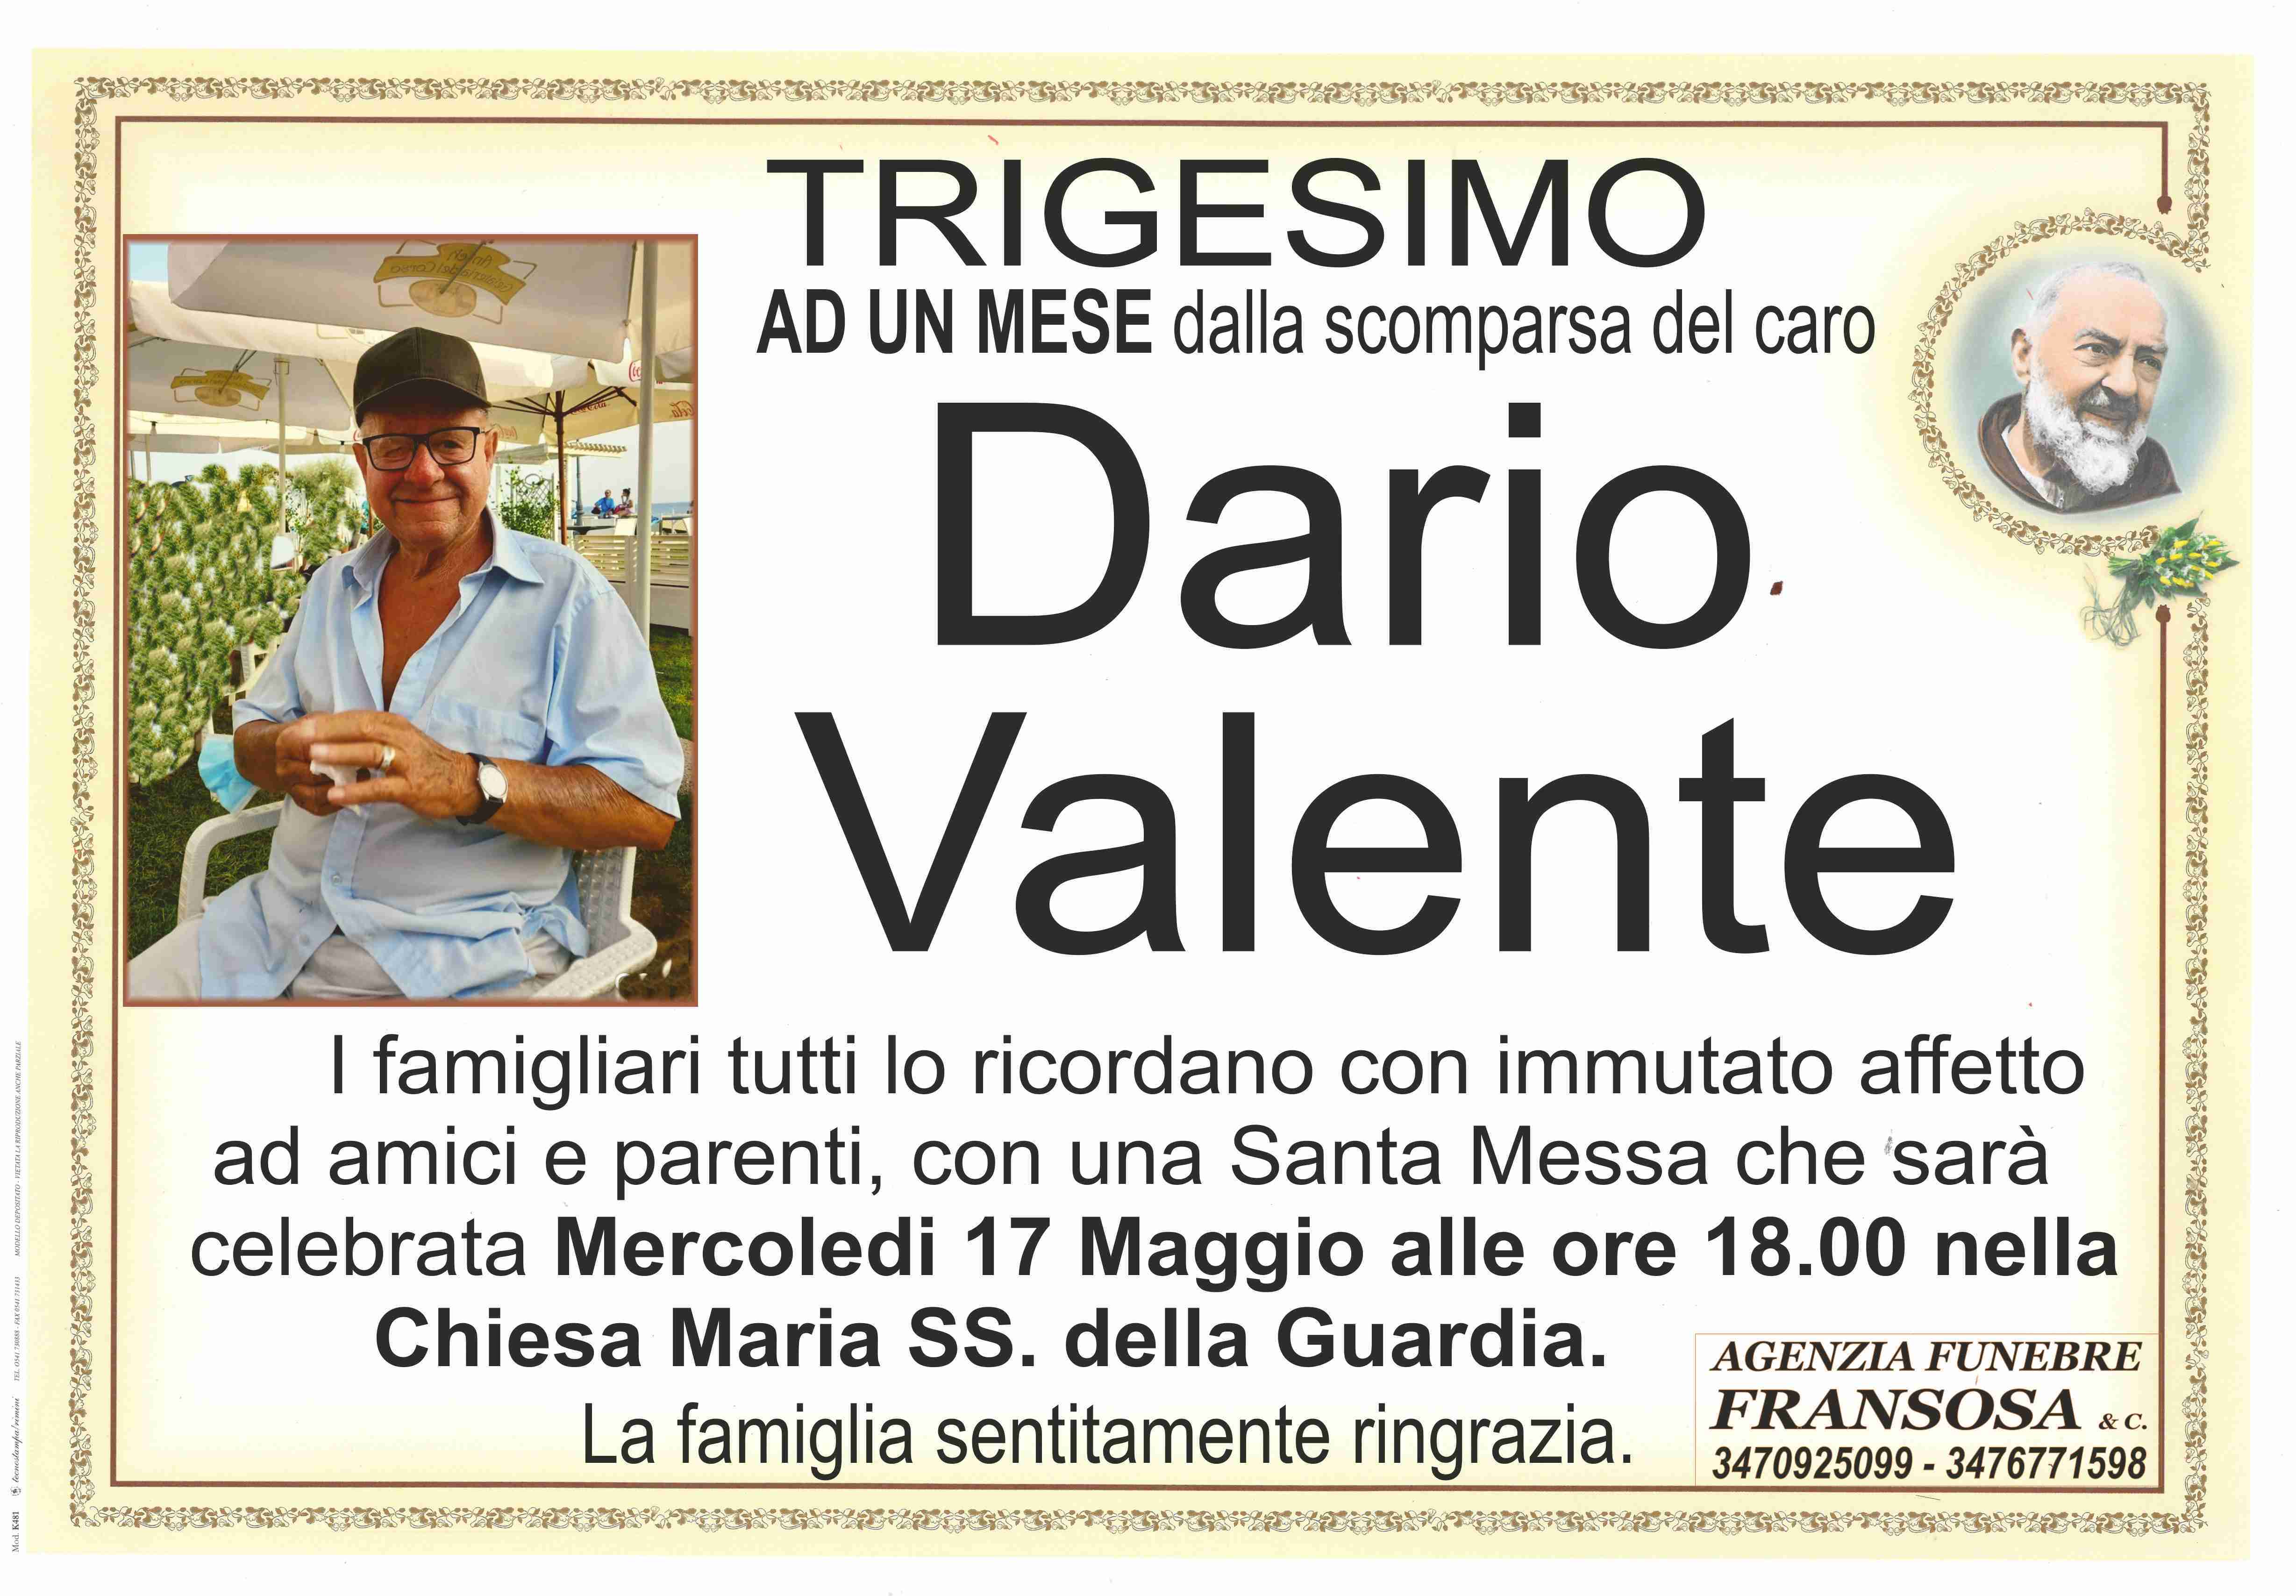 Dario Valente